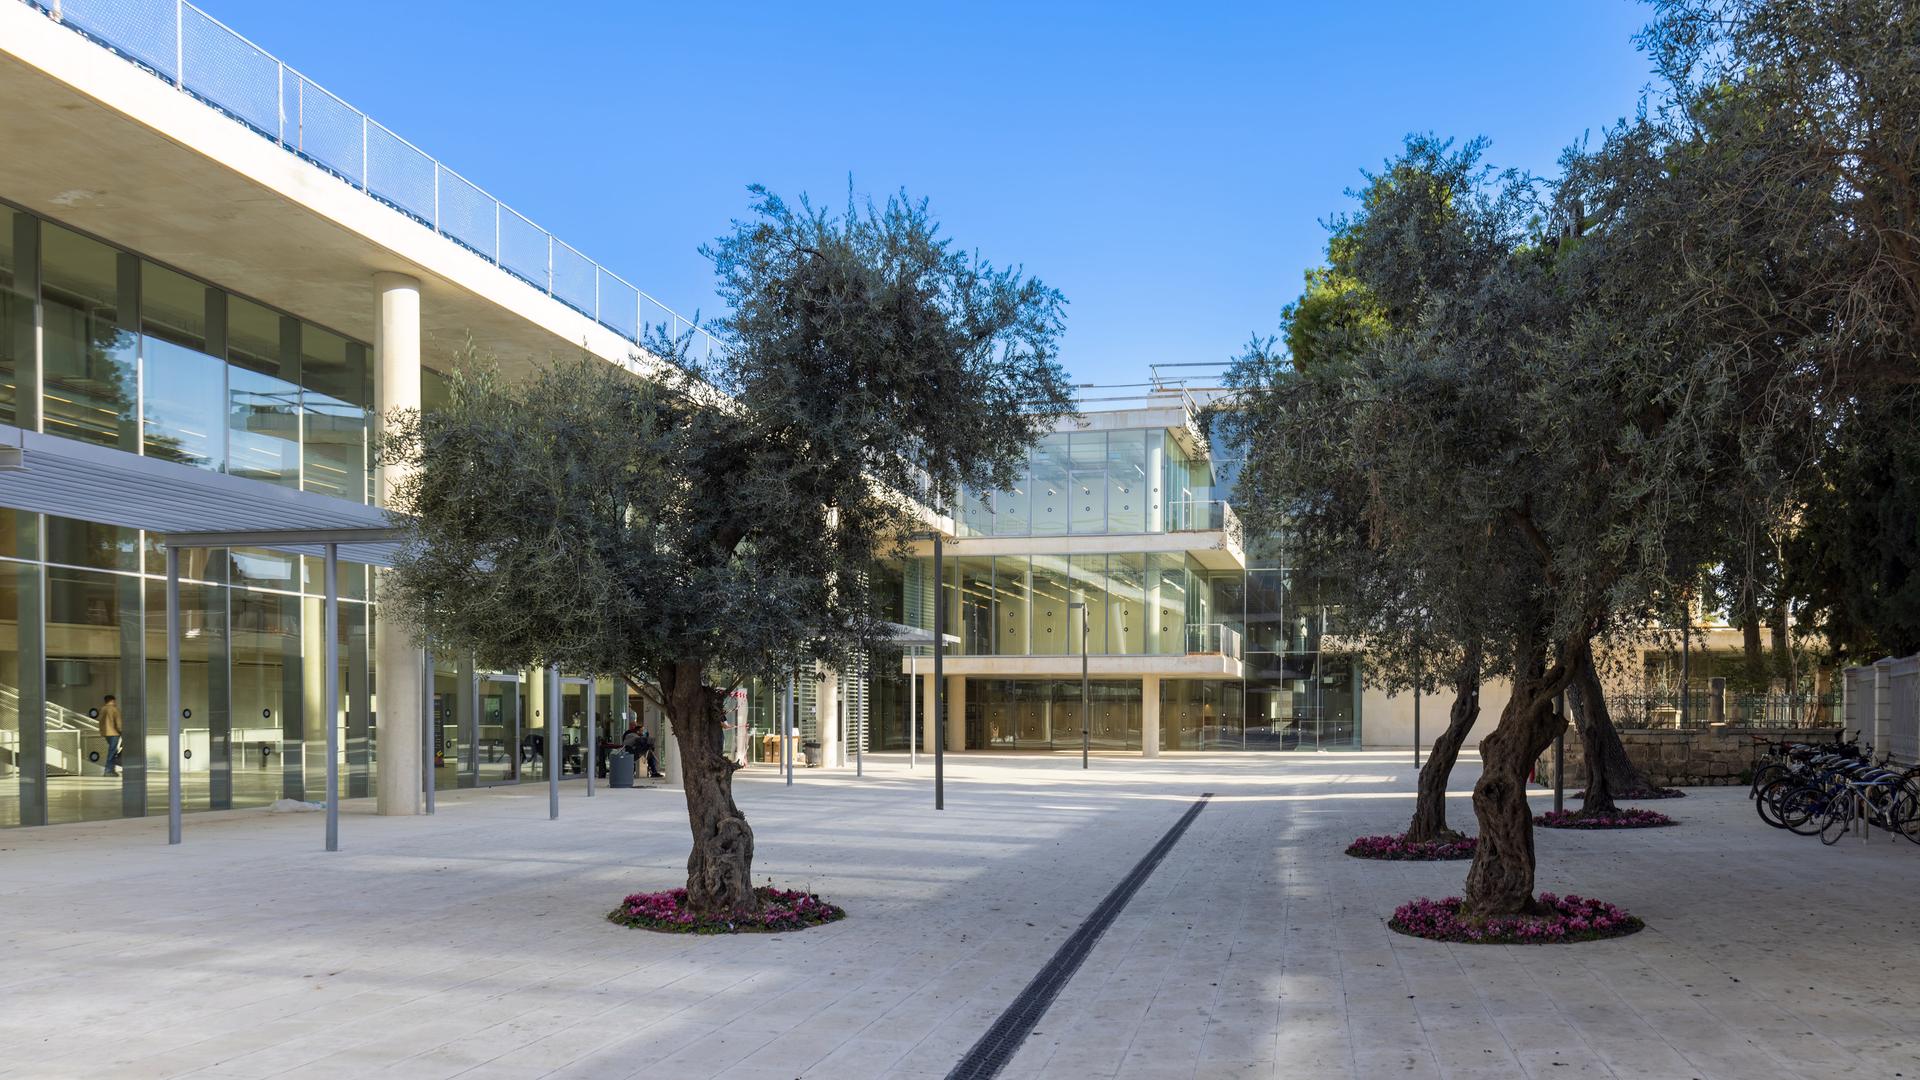 Blick in den Innenhof der Bezalel Academy of Art and Design in Jerusalem. Der Hof ist umrandet von modernen gläsernen Gebäuden, in der Mitte stehen Olivenbäume.